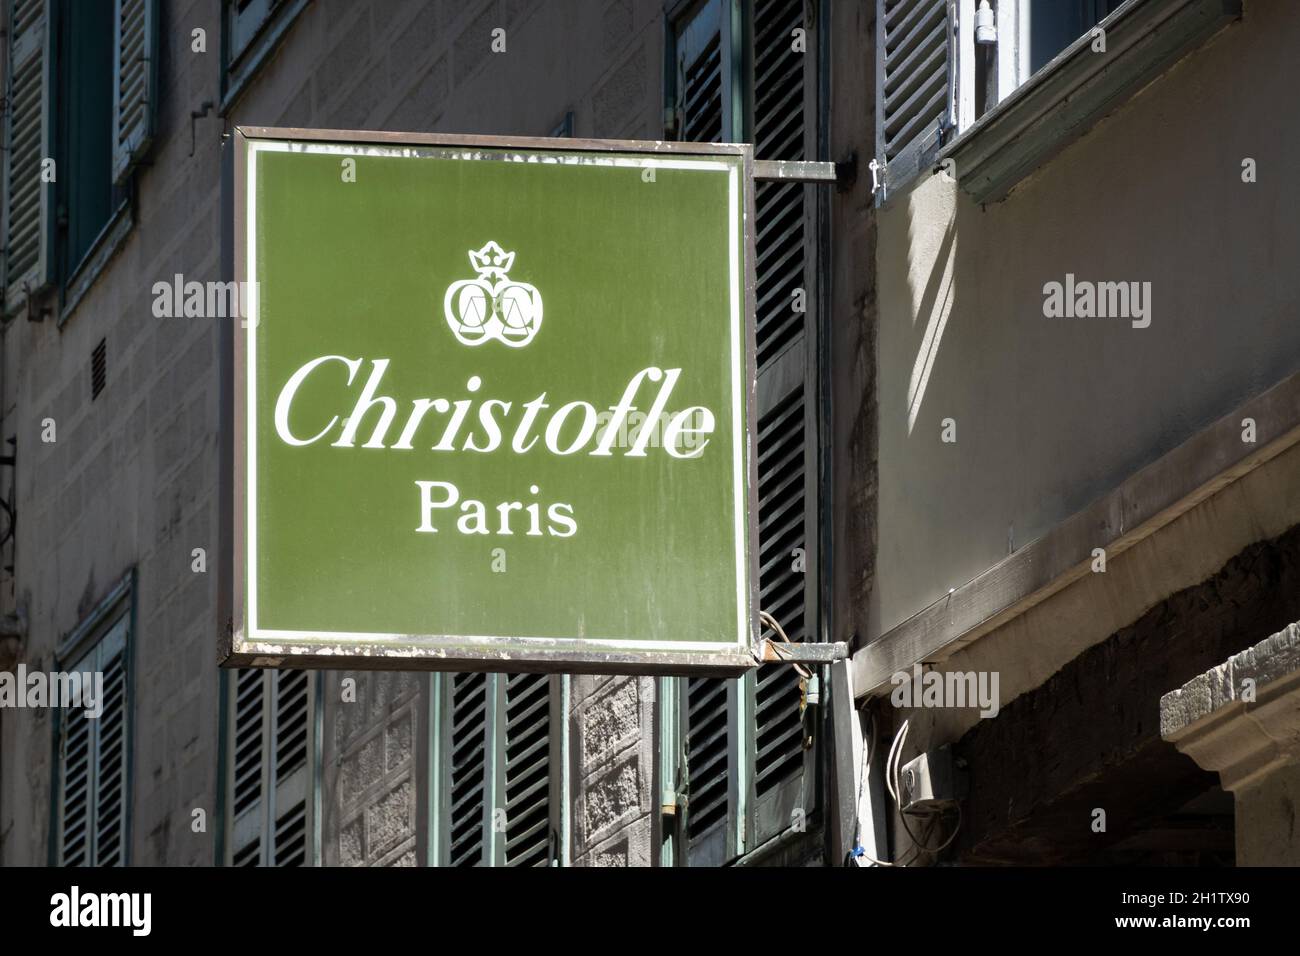 BAYONNE, FRANCE - VERS AVRIL 2021 : enseigne Christofle à l'extérieur.Christofle est une entreprise française d'orfèvre et de vaisselle. Banque D'Images